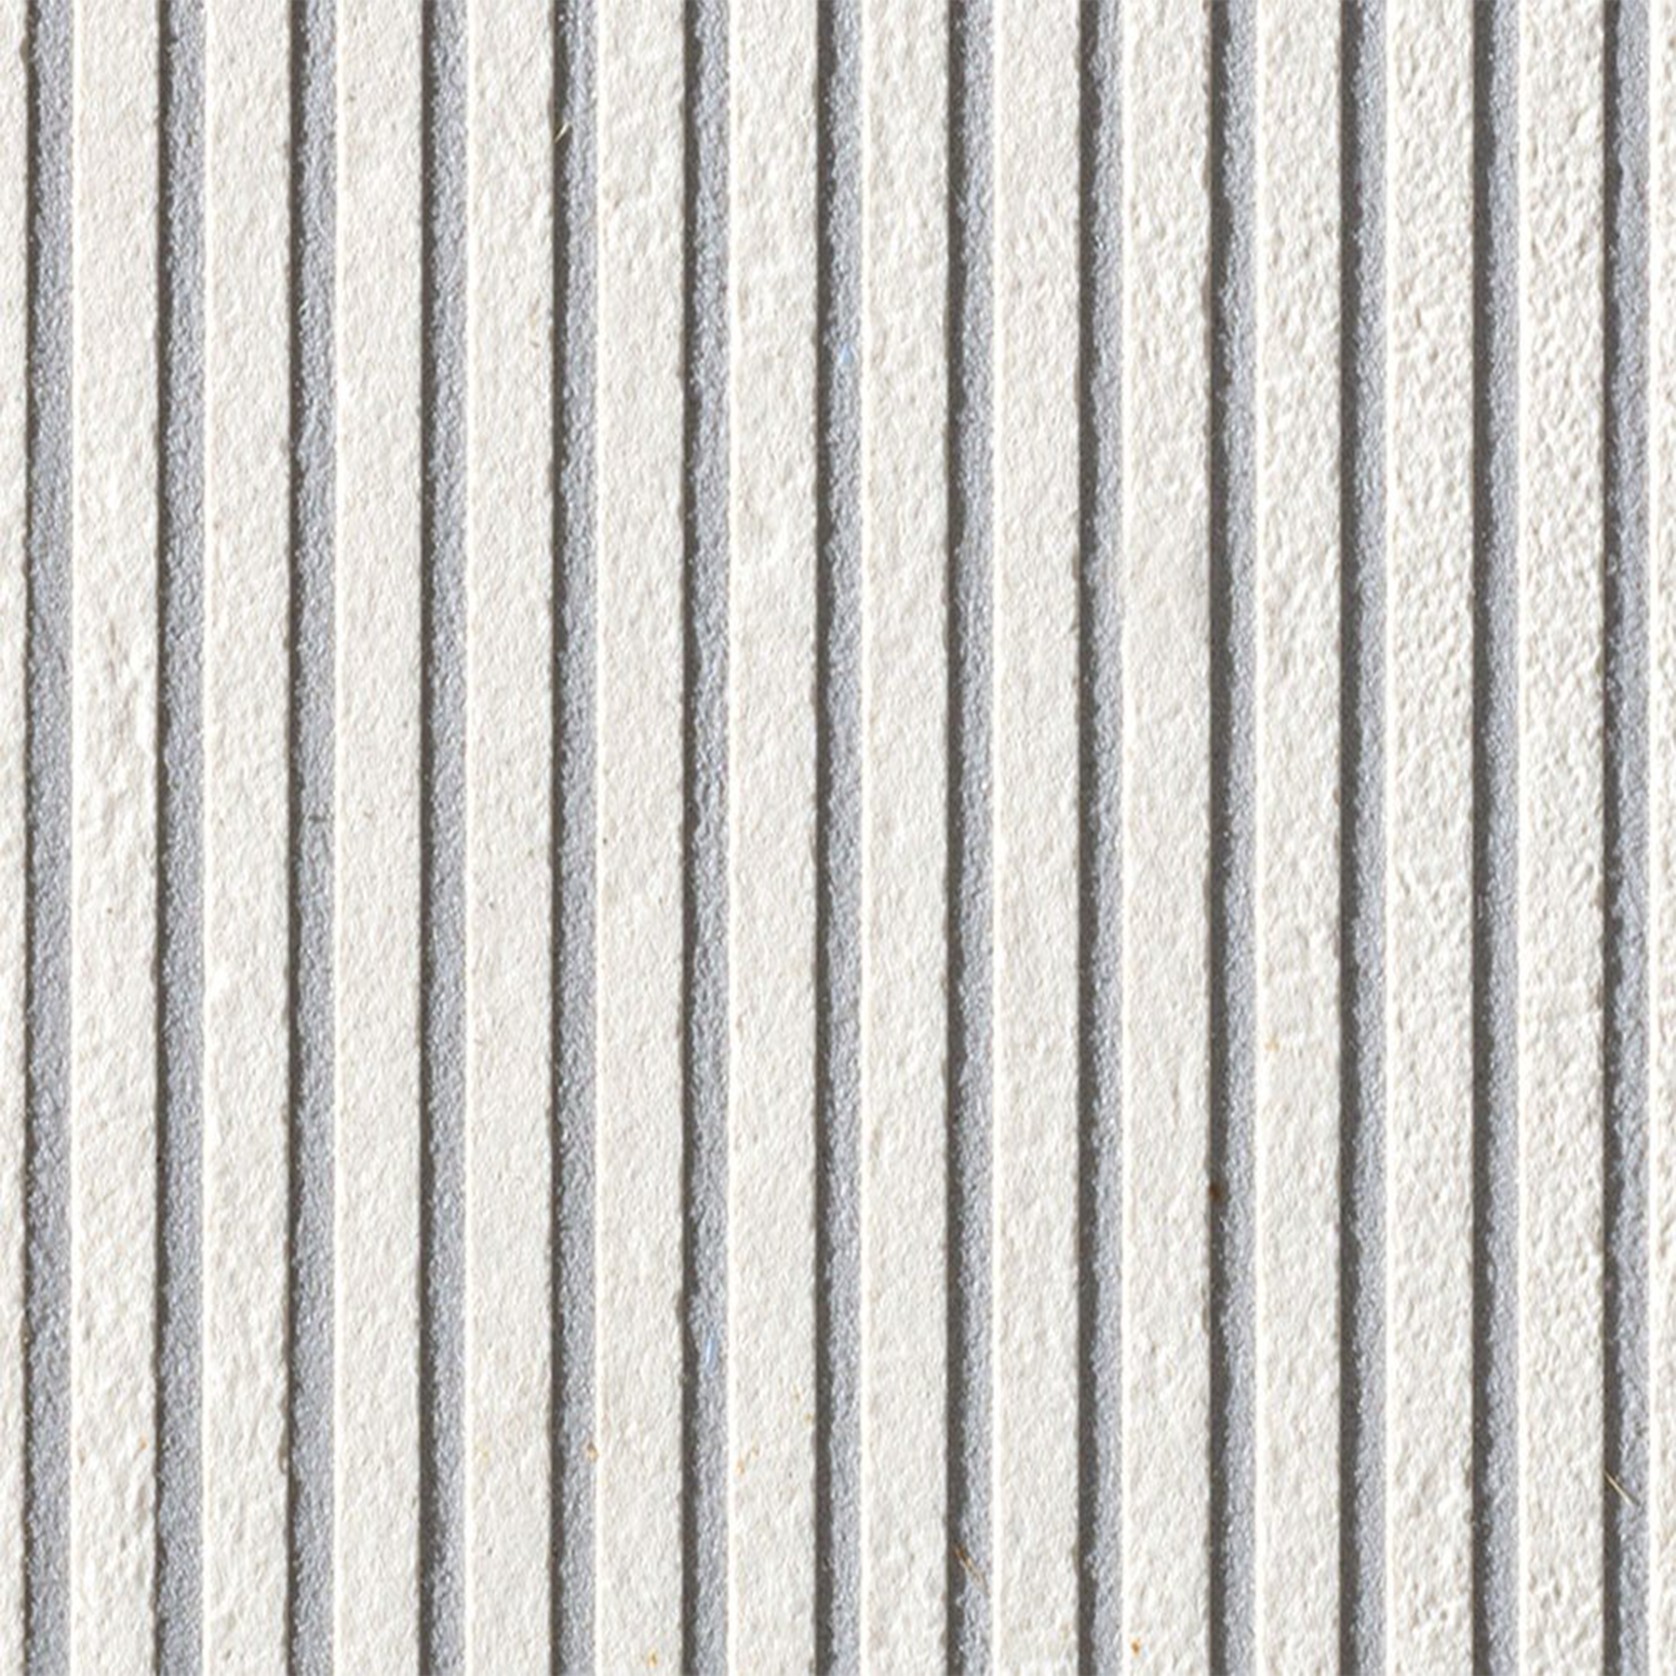 Mutina – Fringe Tile gallery detail image